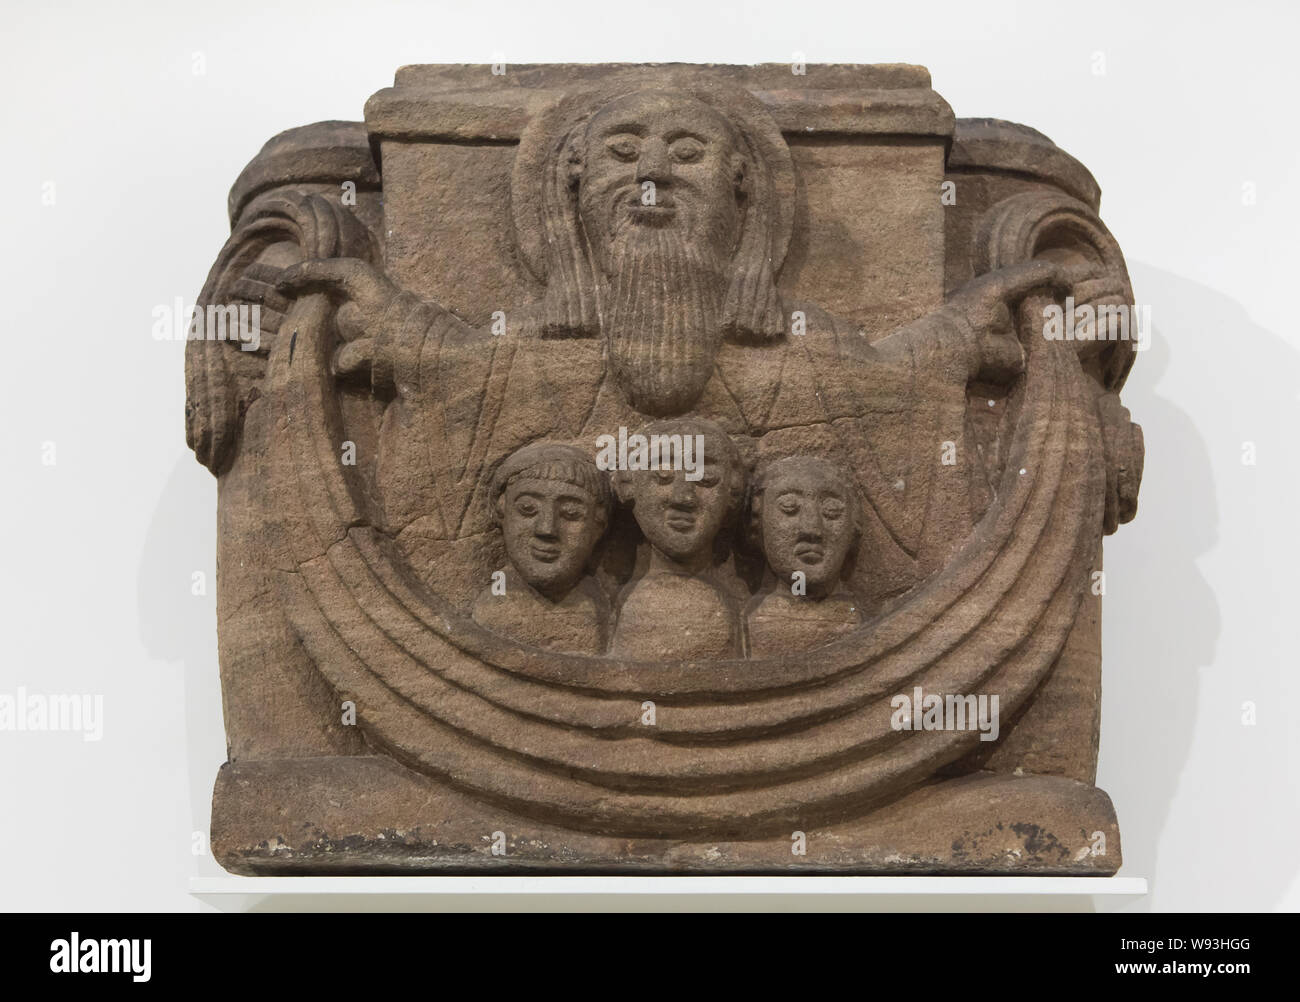 Die Gerechten in Abrahams Schoß. Romanische Kapital aus dem 12. Jahrhundert datiert aus dem alspach Abbey (Abbaye d'Alspach), nun im Unterlinden Museum (Musée Unterlinden in Colmar, Elsass, Frankreich. Stockfoto